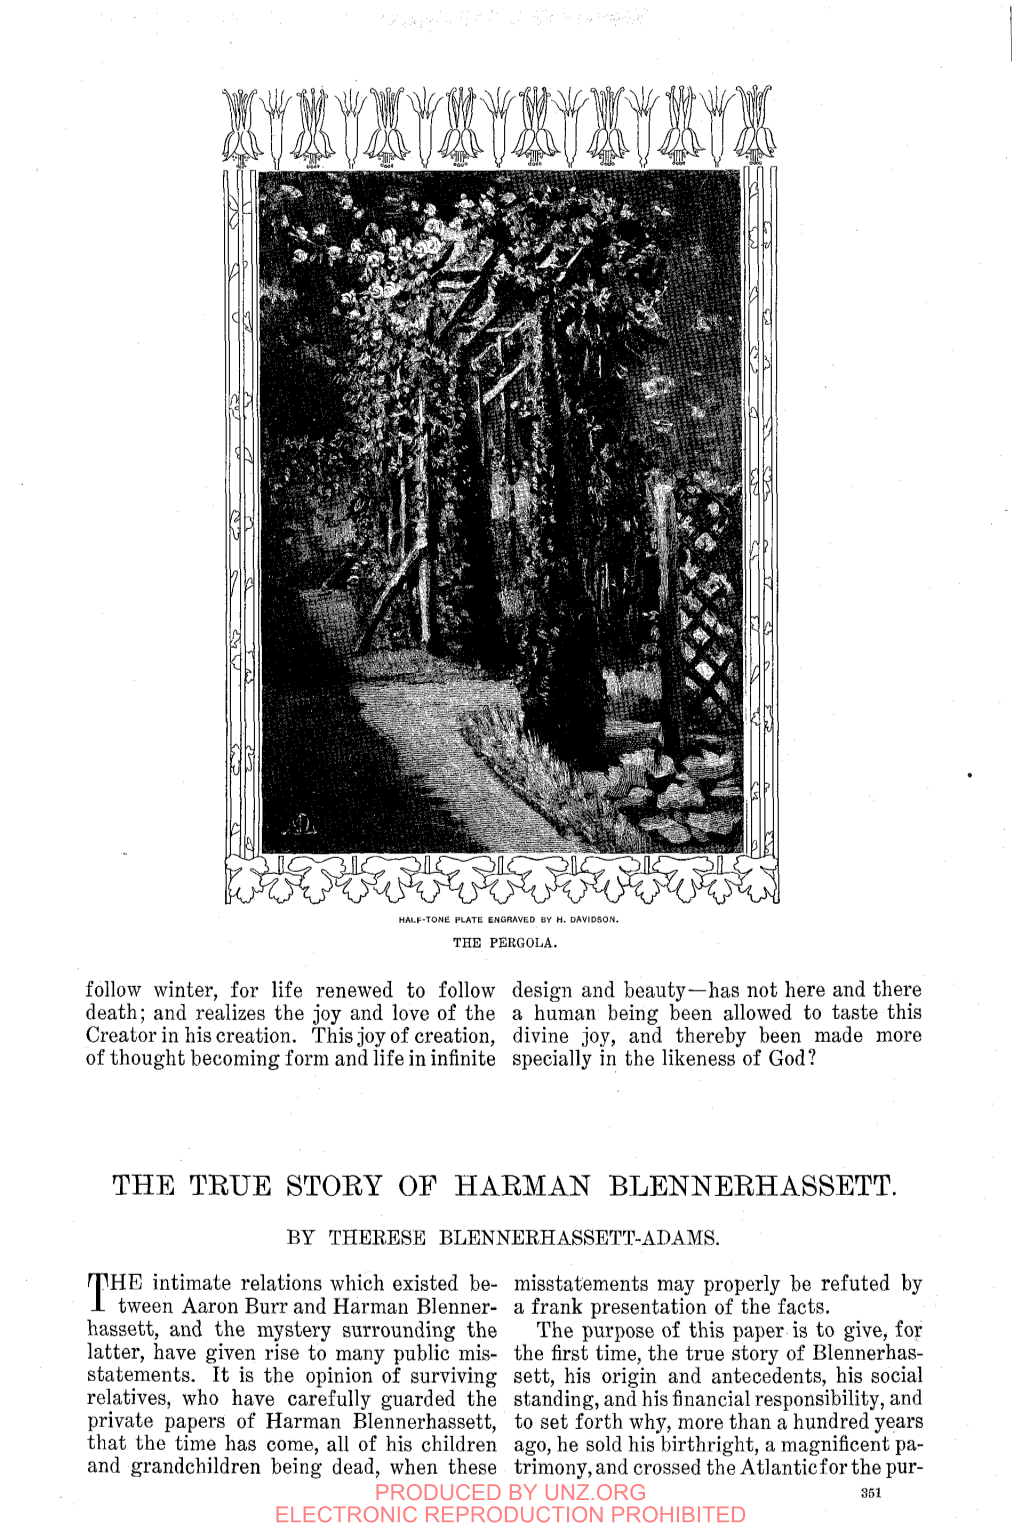 The Teue Story of Harman Blennerhassett